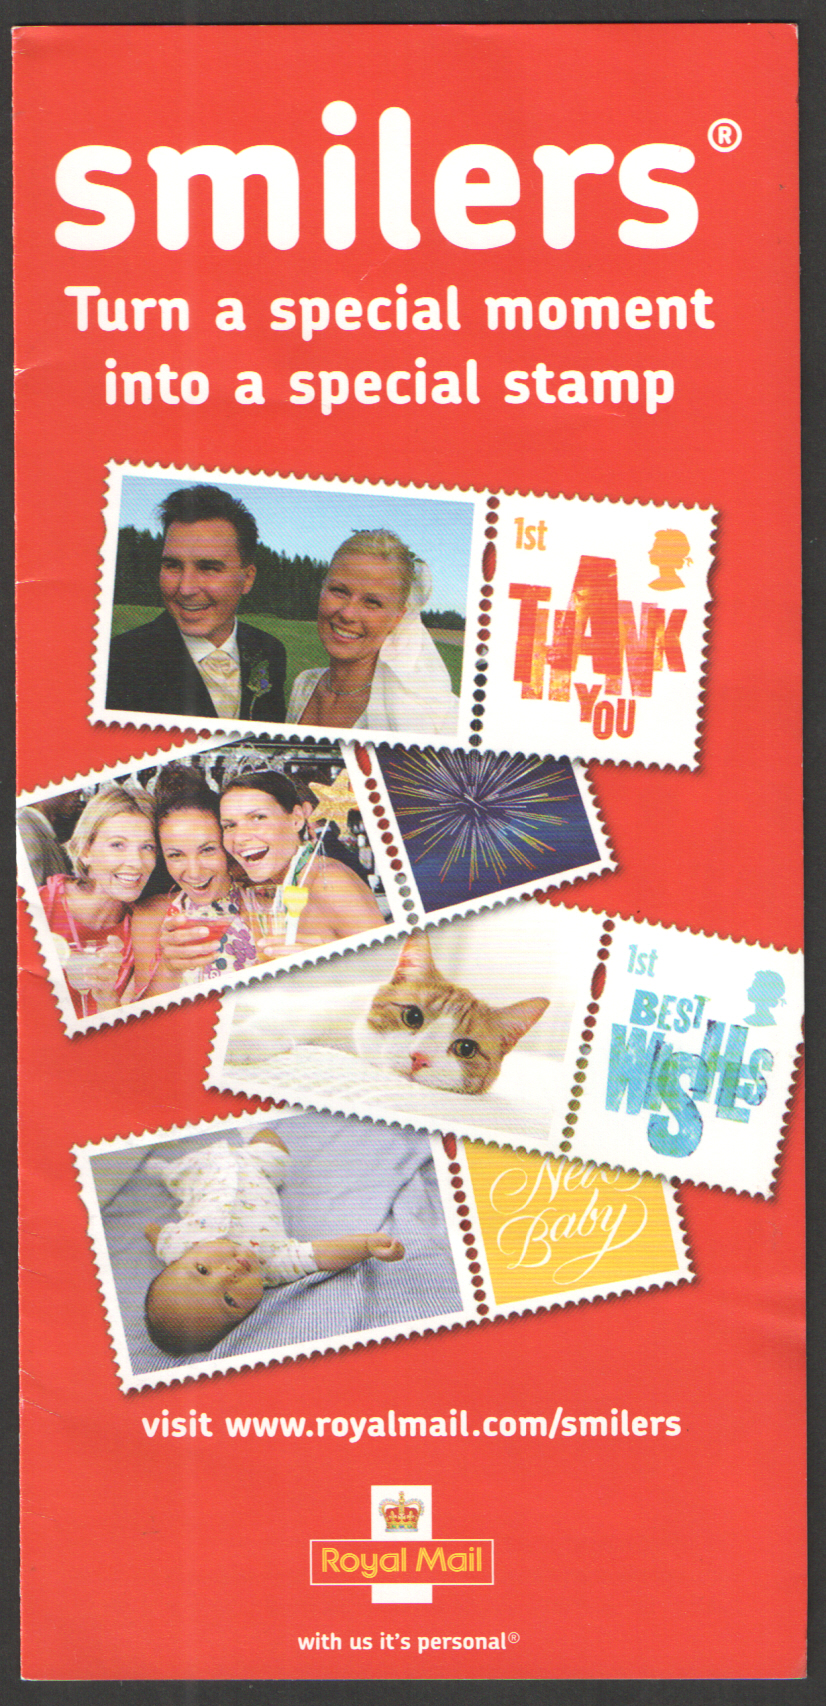 (image for) Smilers Royal Mail Promotional Leaflet Code: RMJ046DL